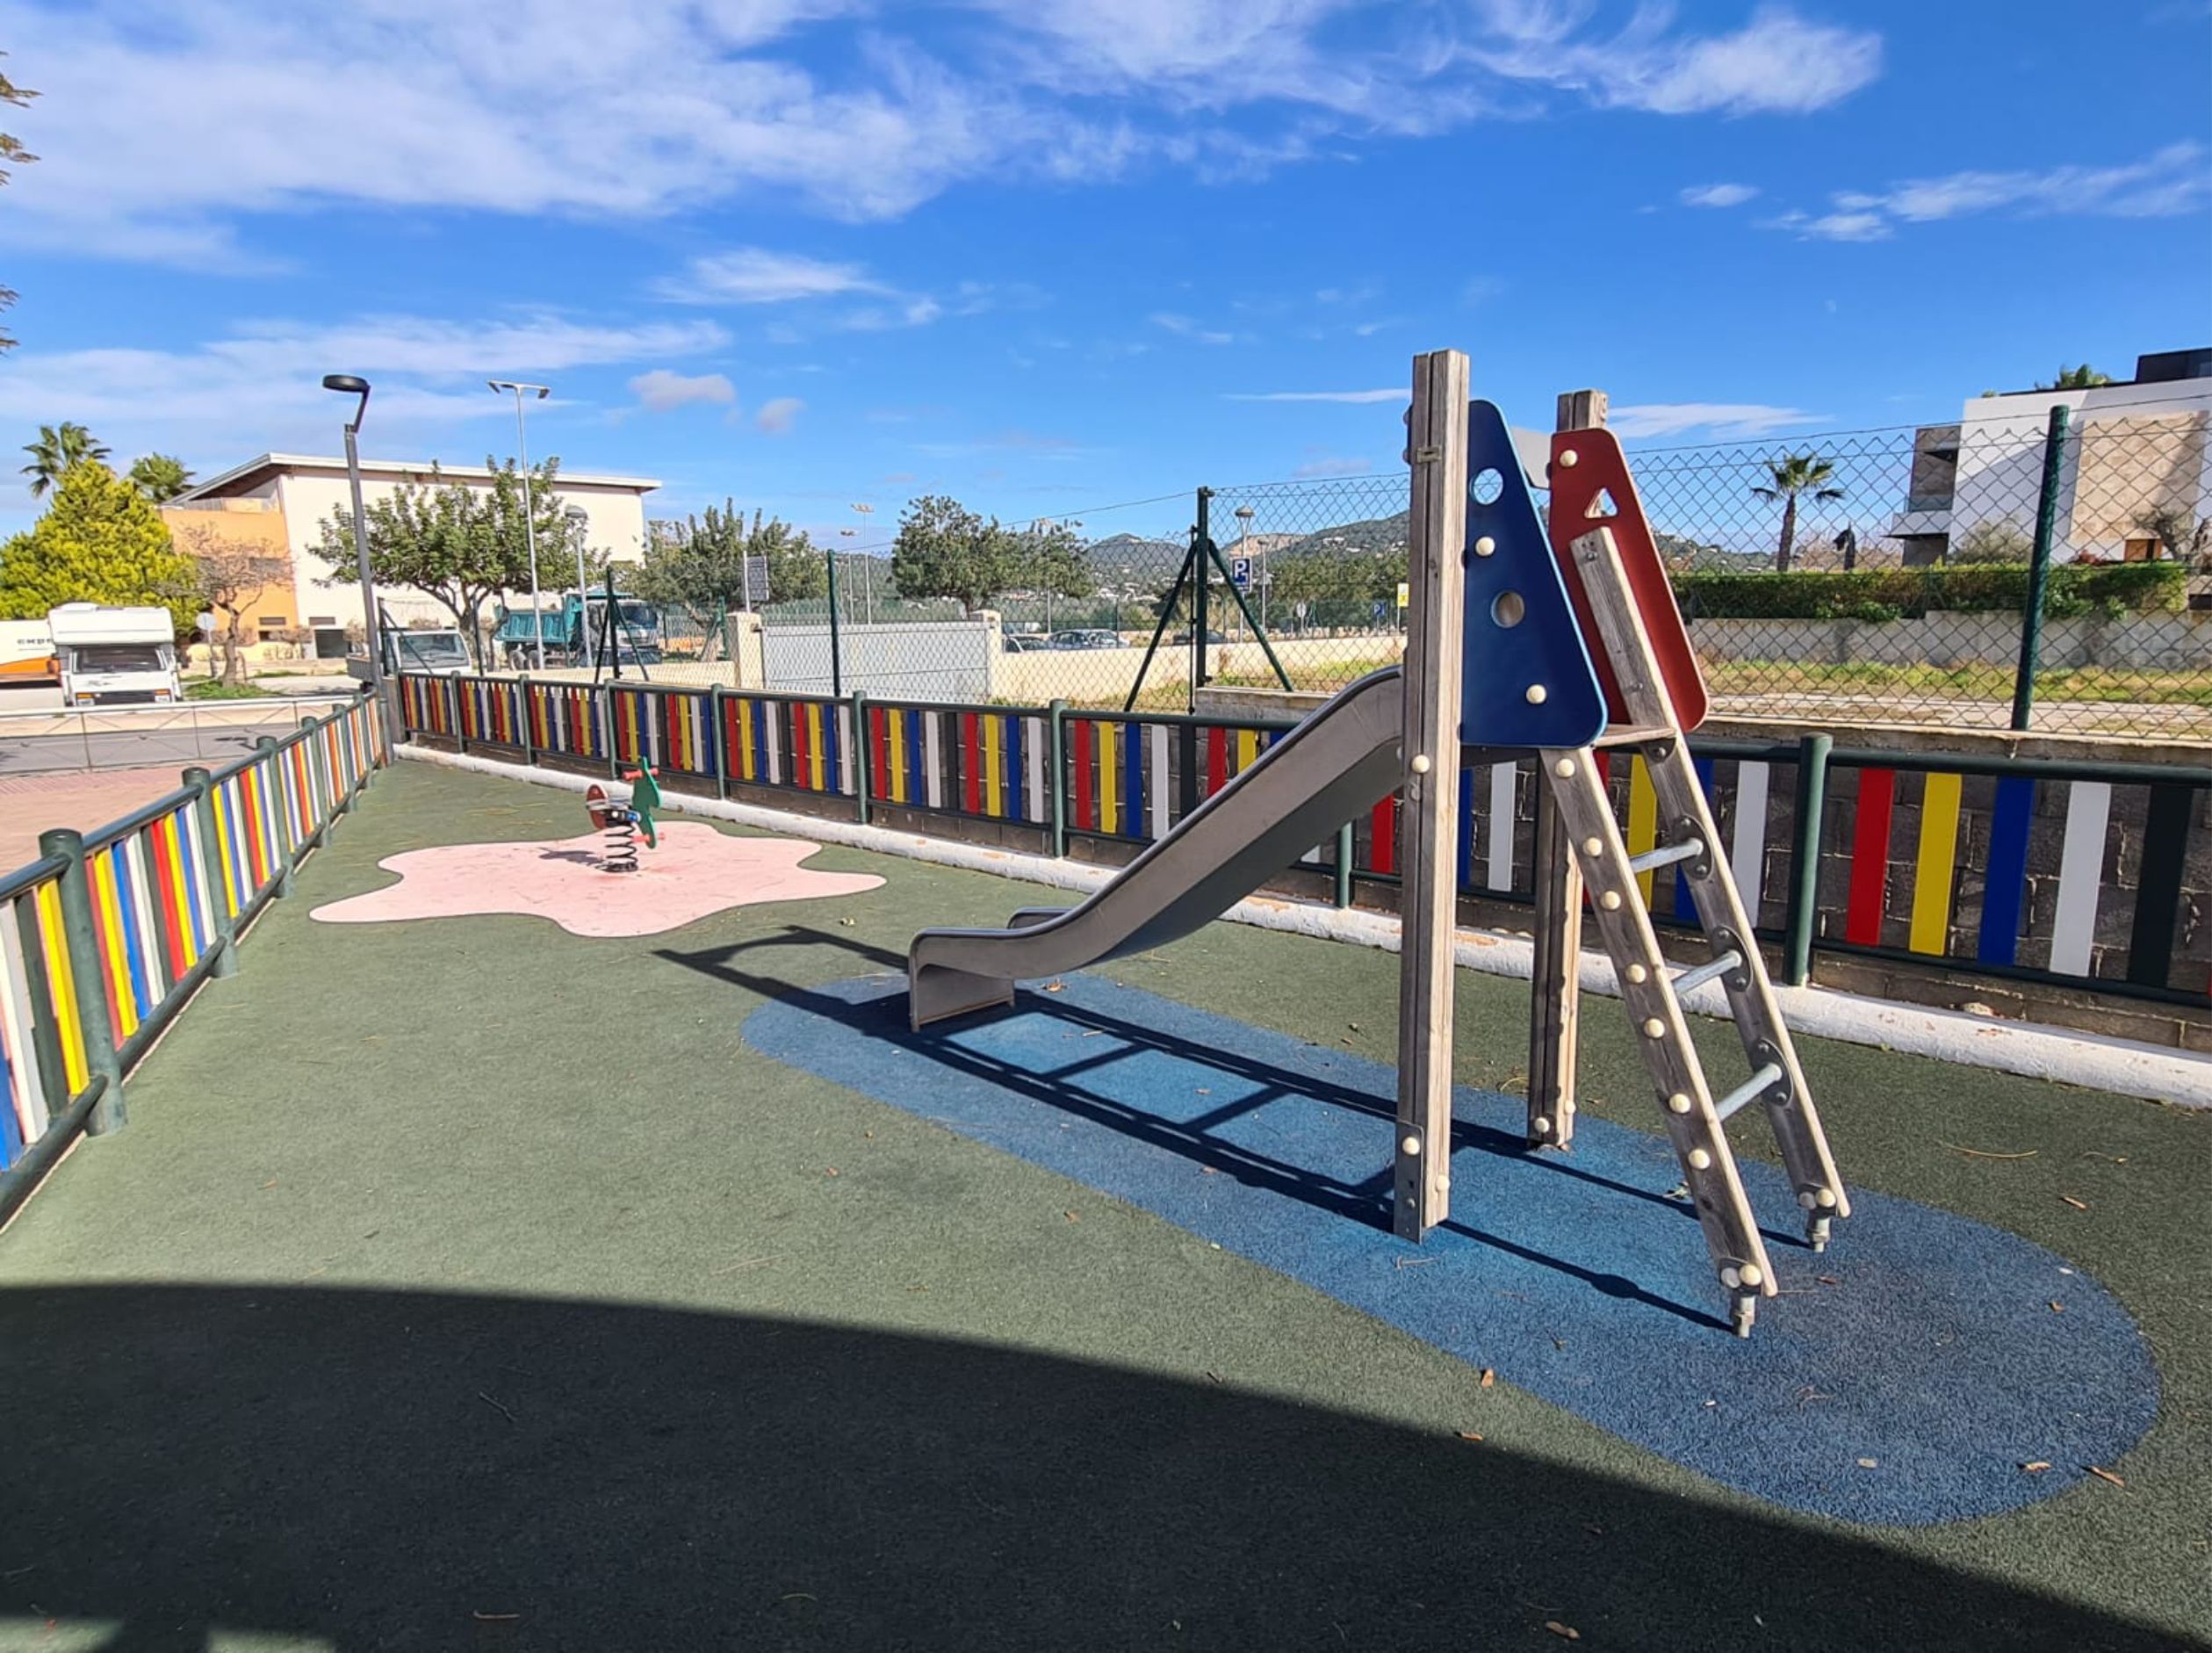 Es Puig d'en Valls children’s playground